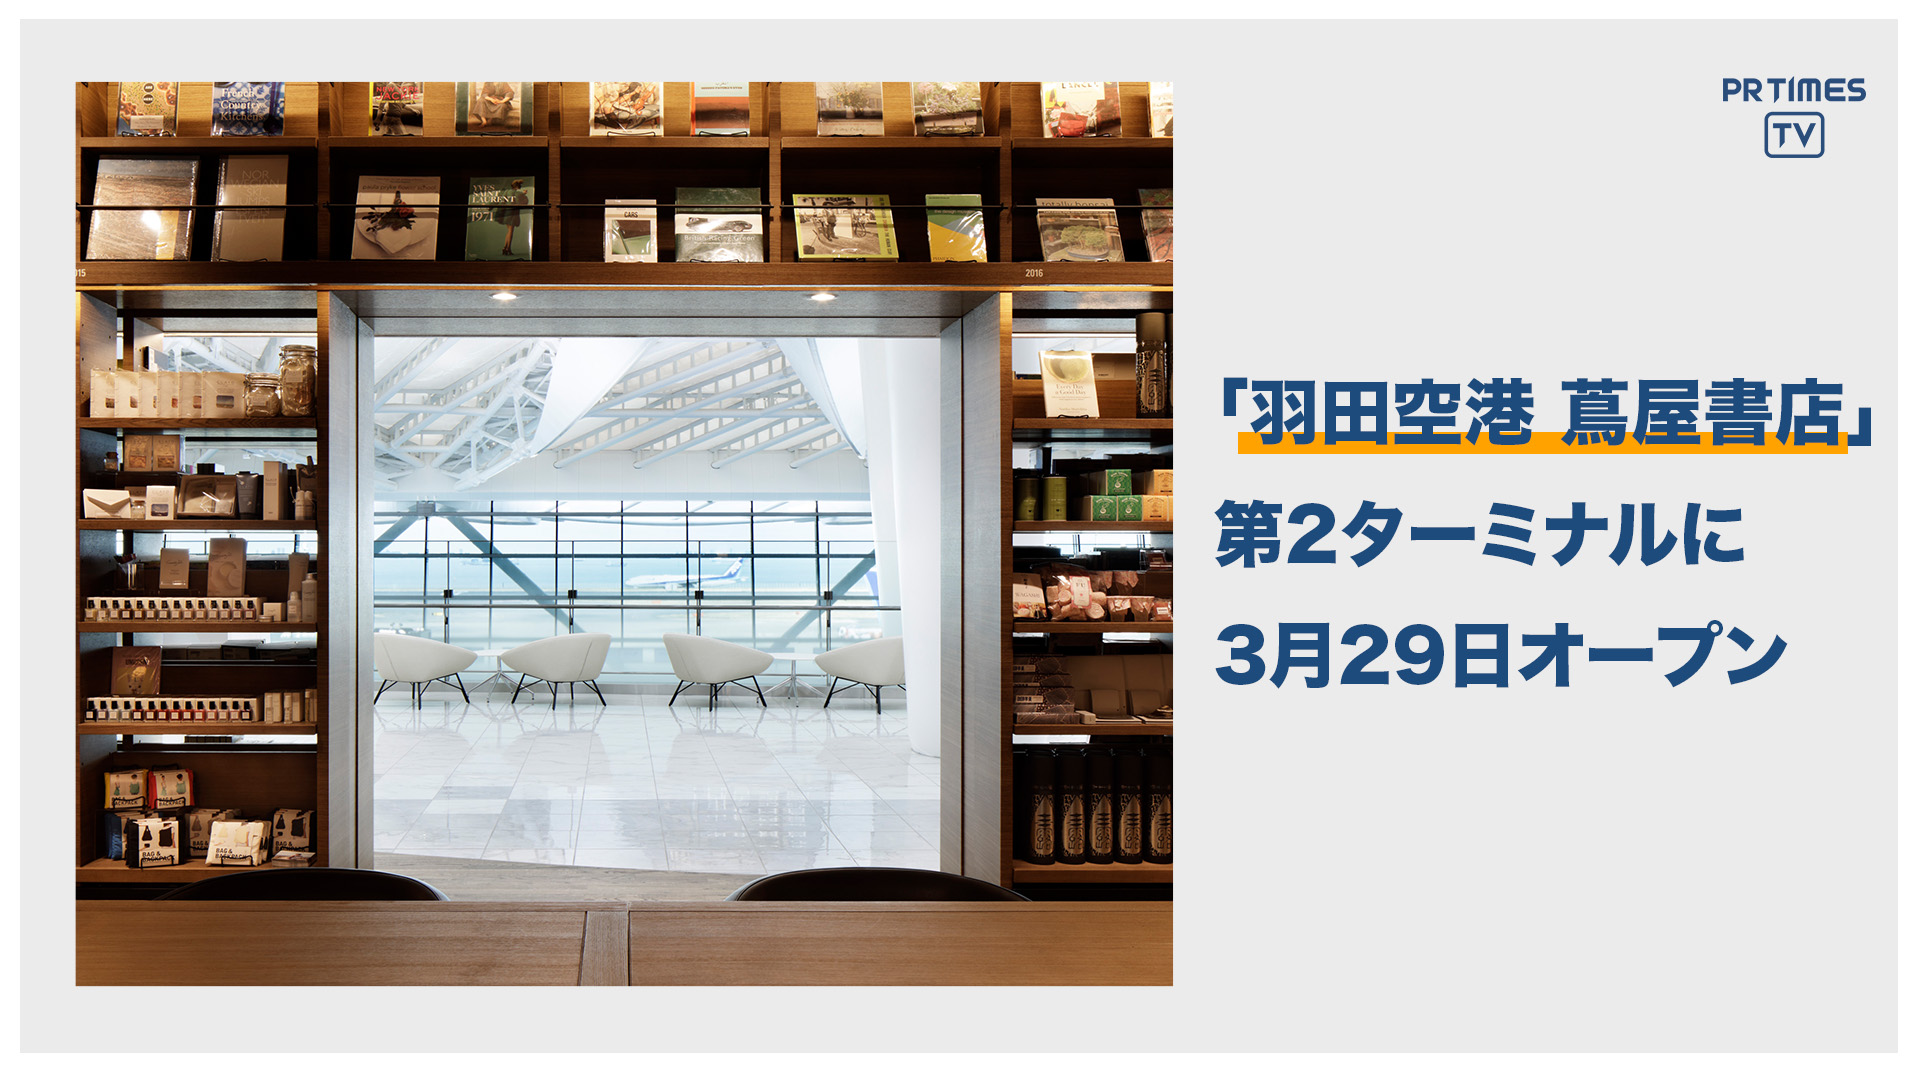 『羽田空港 蔦屋書店』が日本の新たな空の玄関口「羽田空港 第2ターミナル」に3月29日オープン